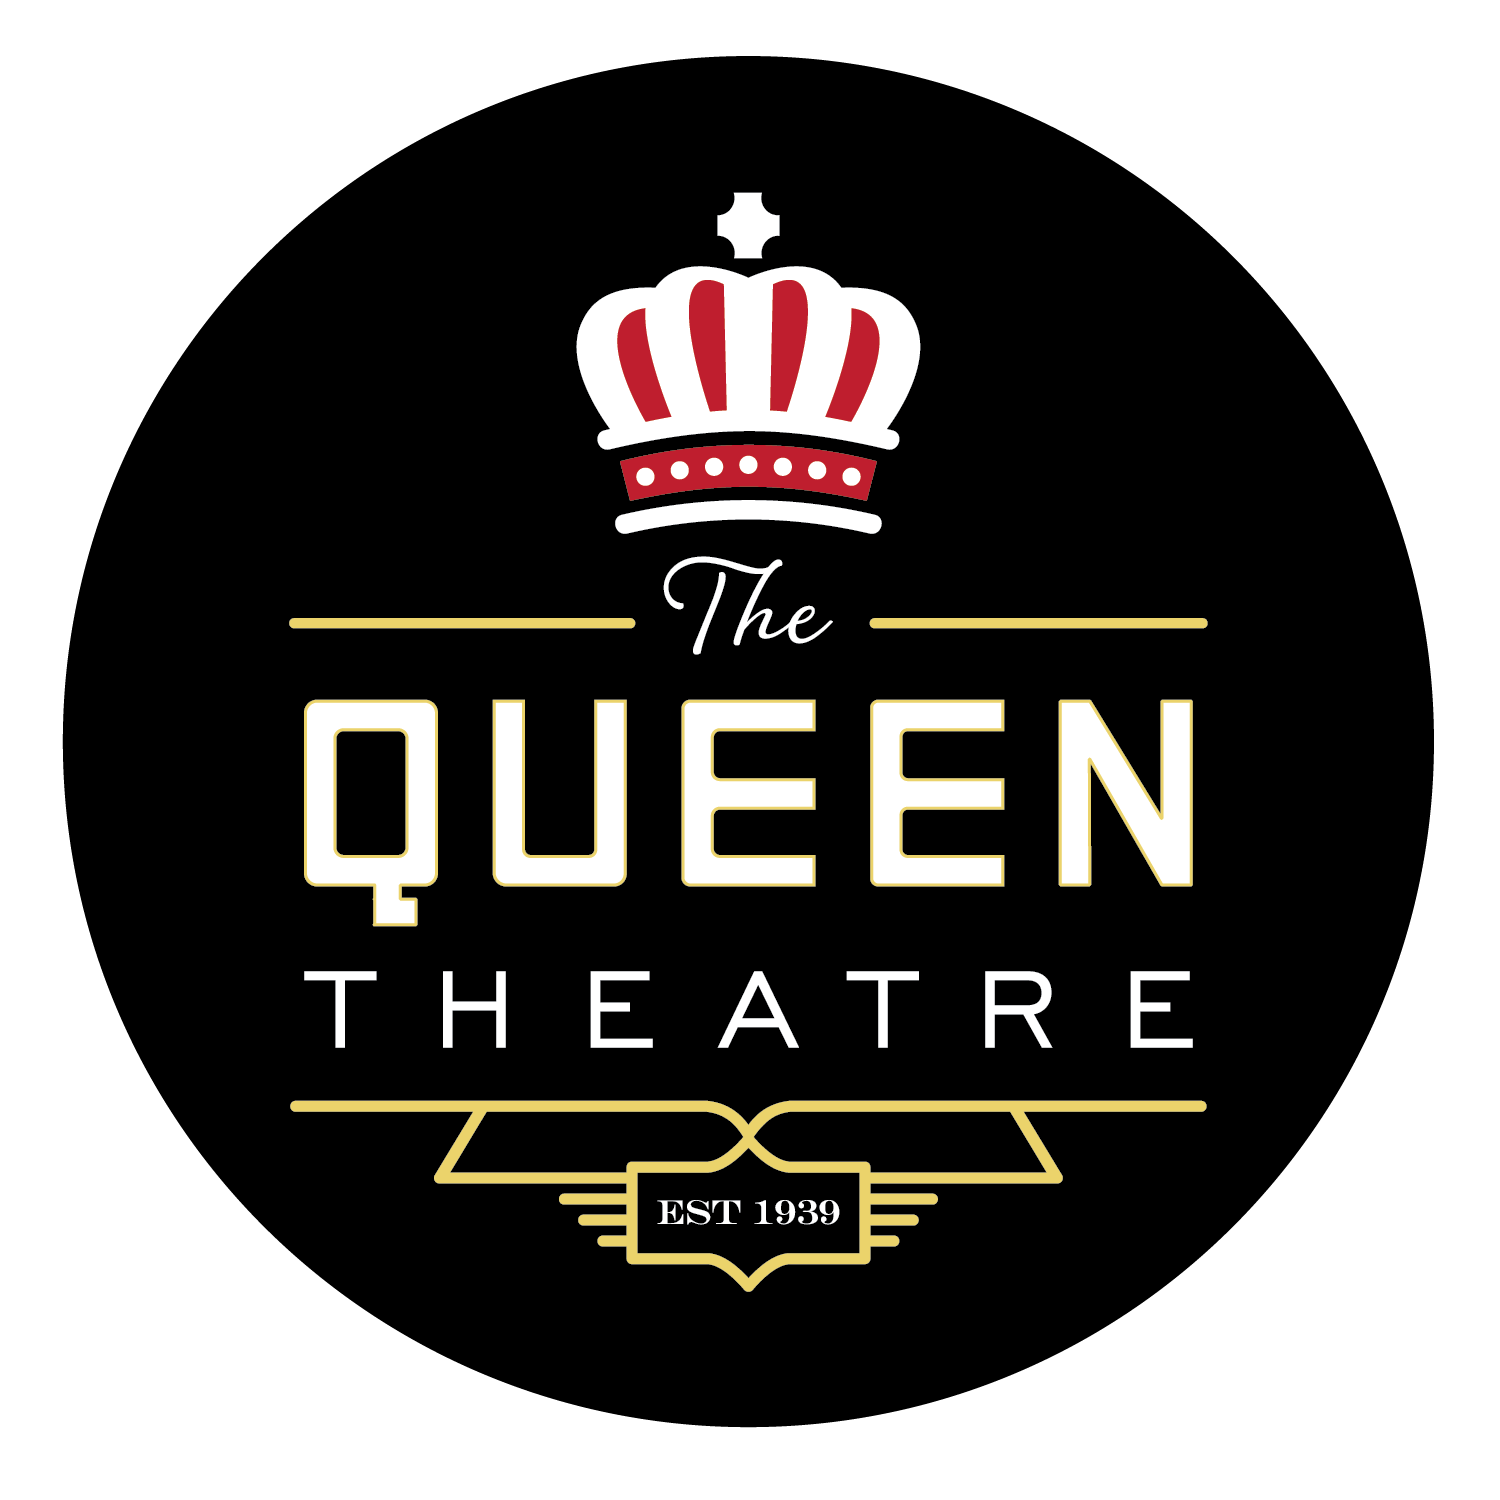 The Queen Theater: Big Screen Classics